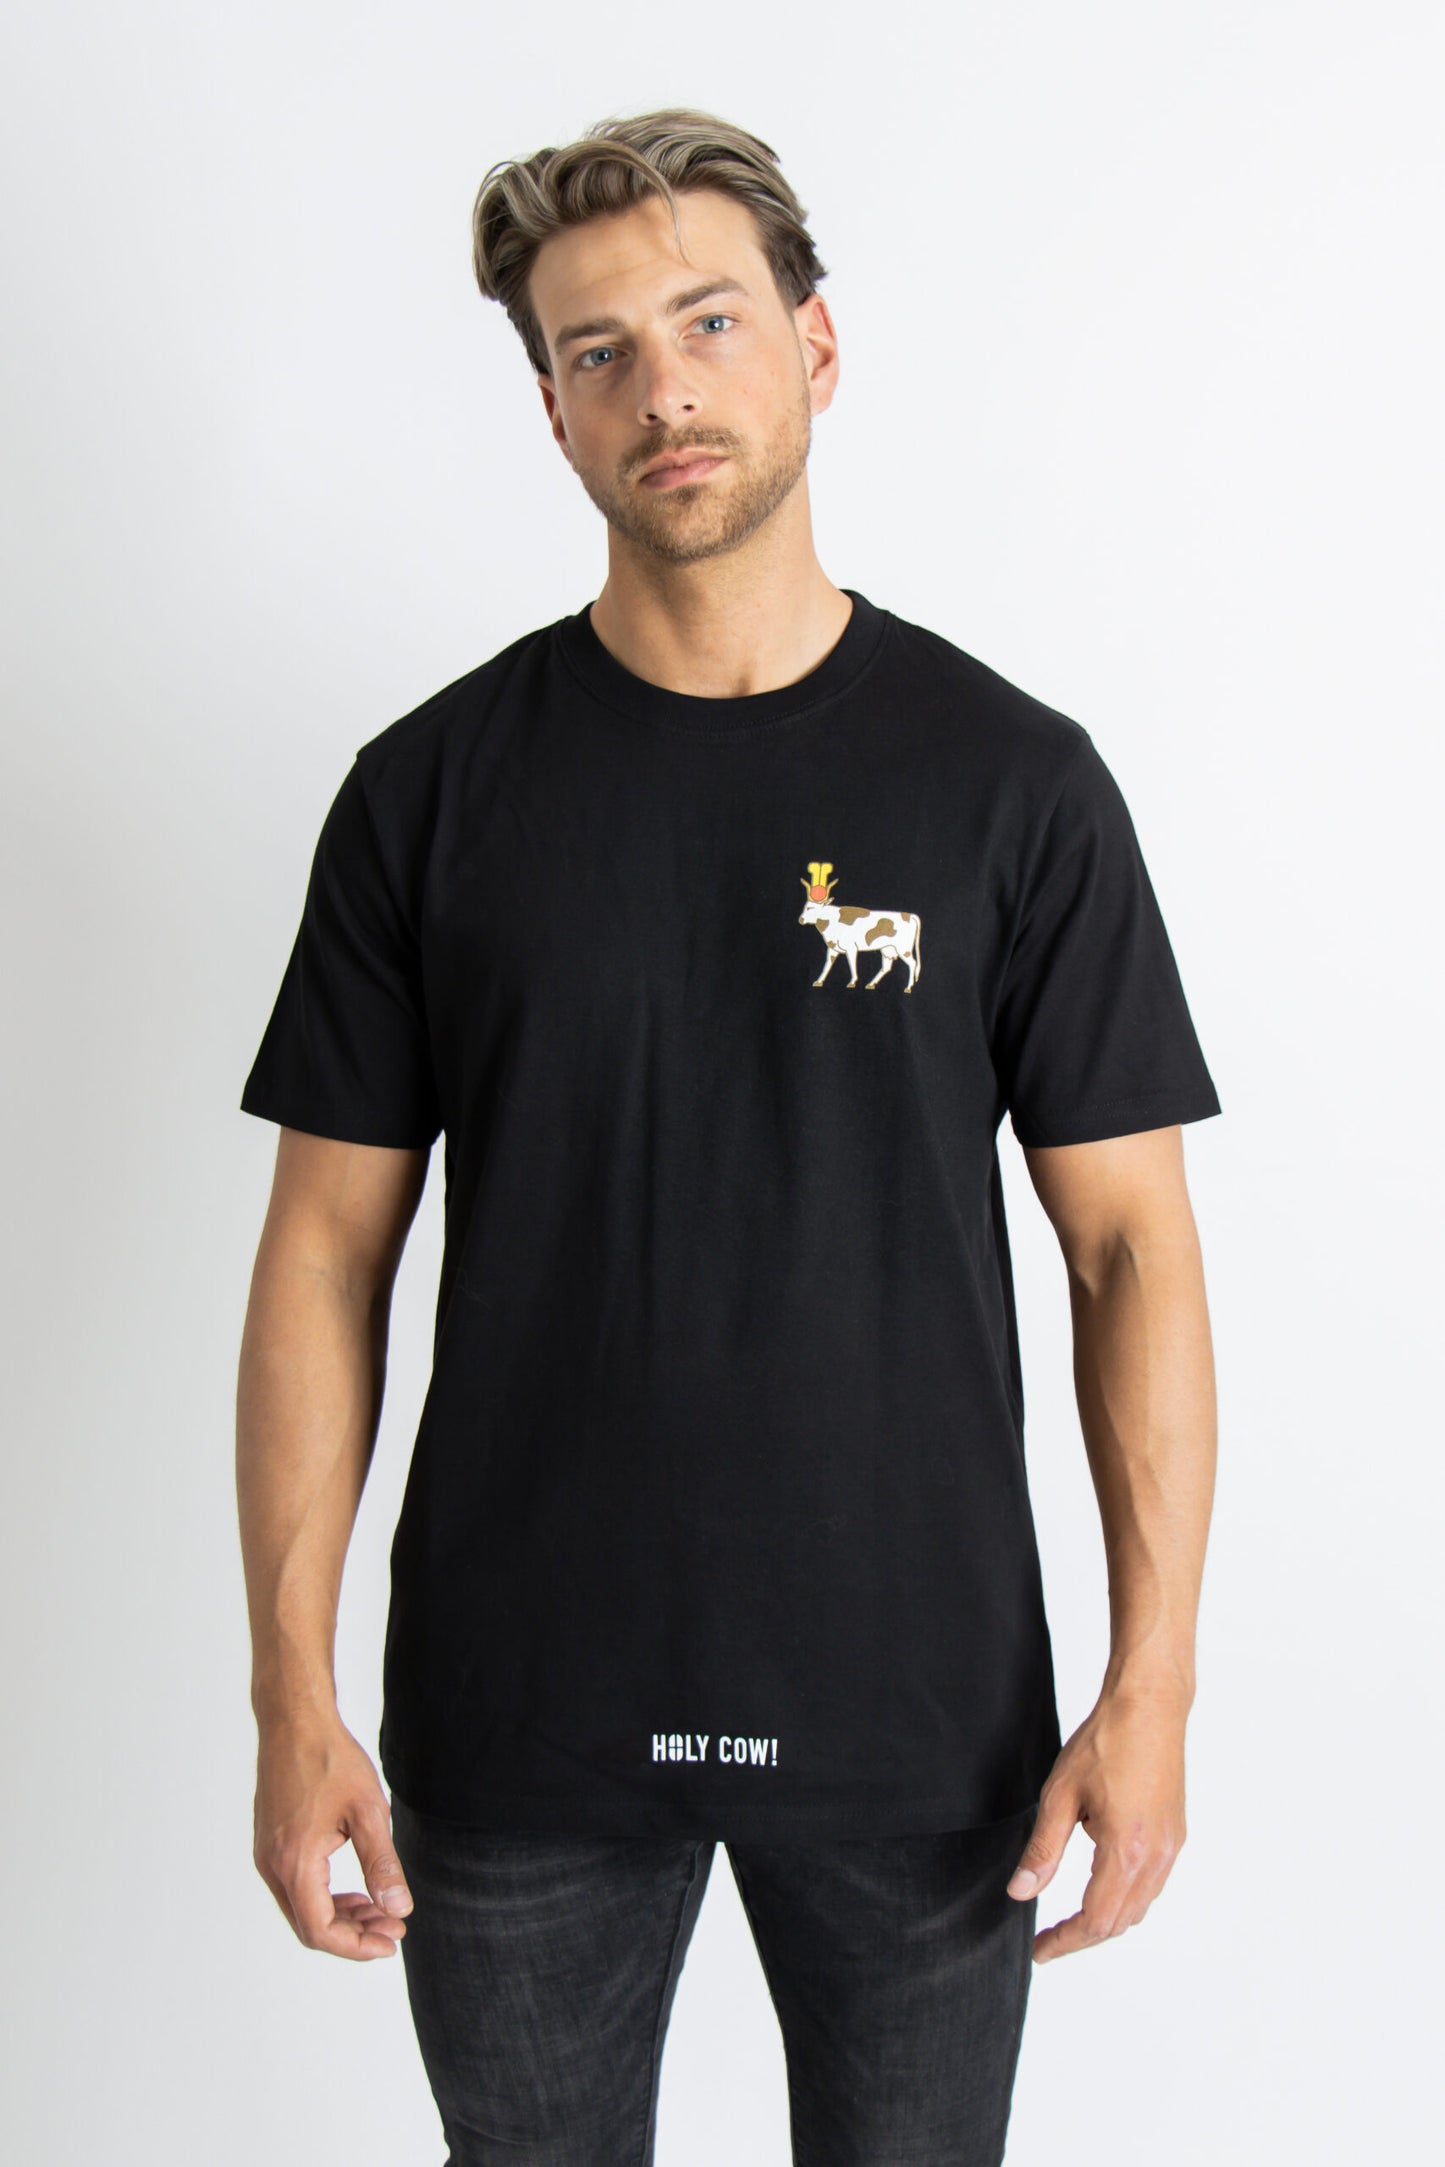 Holy cow! black t-shirt